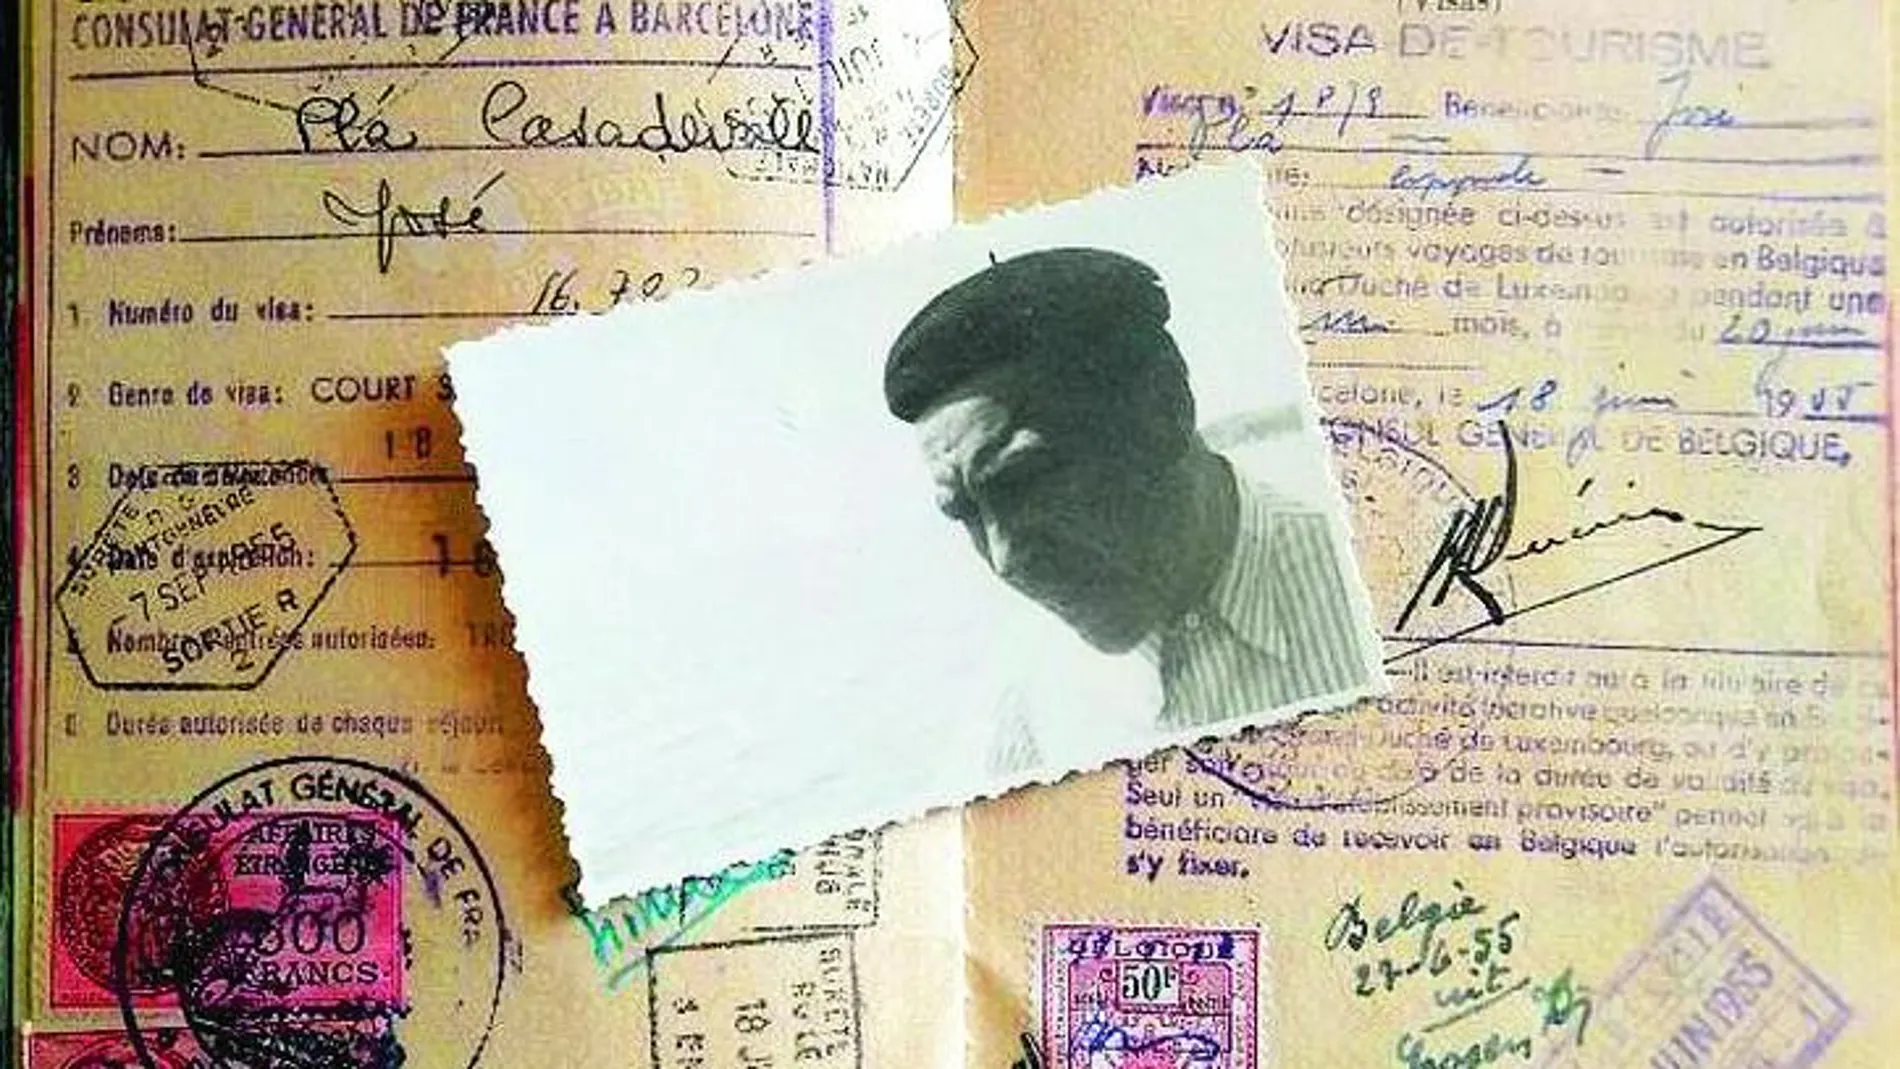 El pasaporte de 1955 se vende ahora en un portal de internet por 1.620 euros. El documento fue guardado por Josep Quintà y posteriormente vendido por su hijo Alfons.